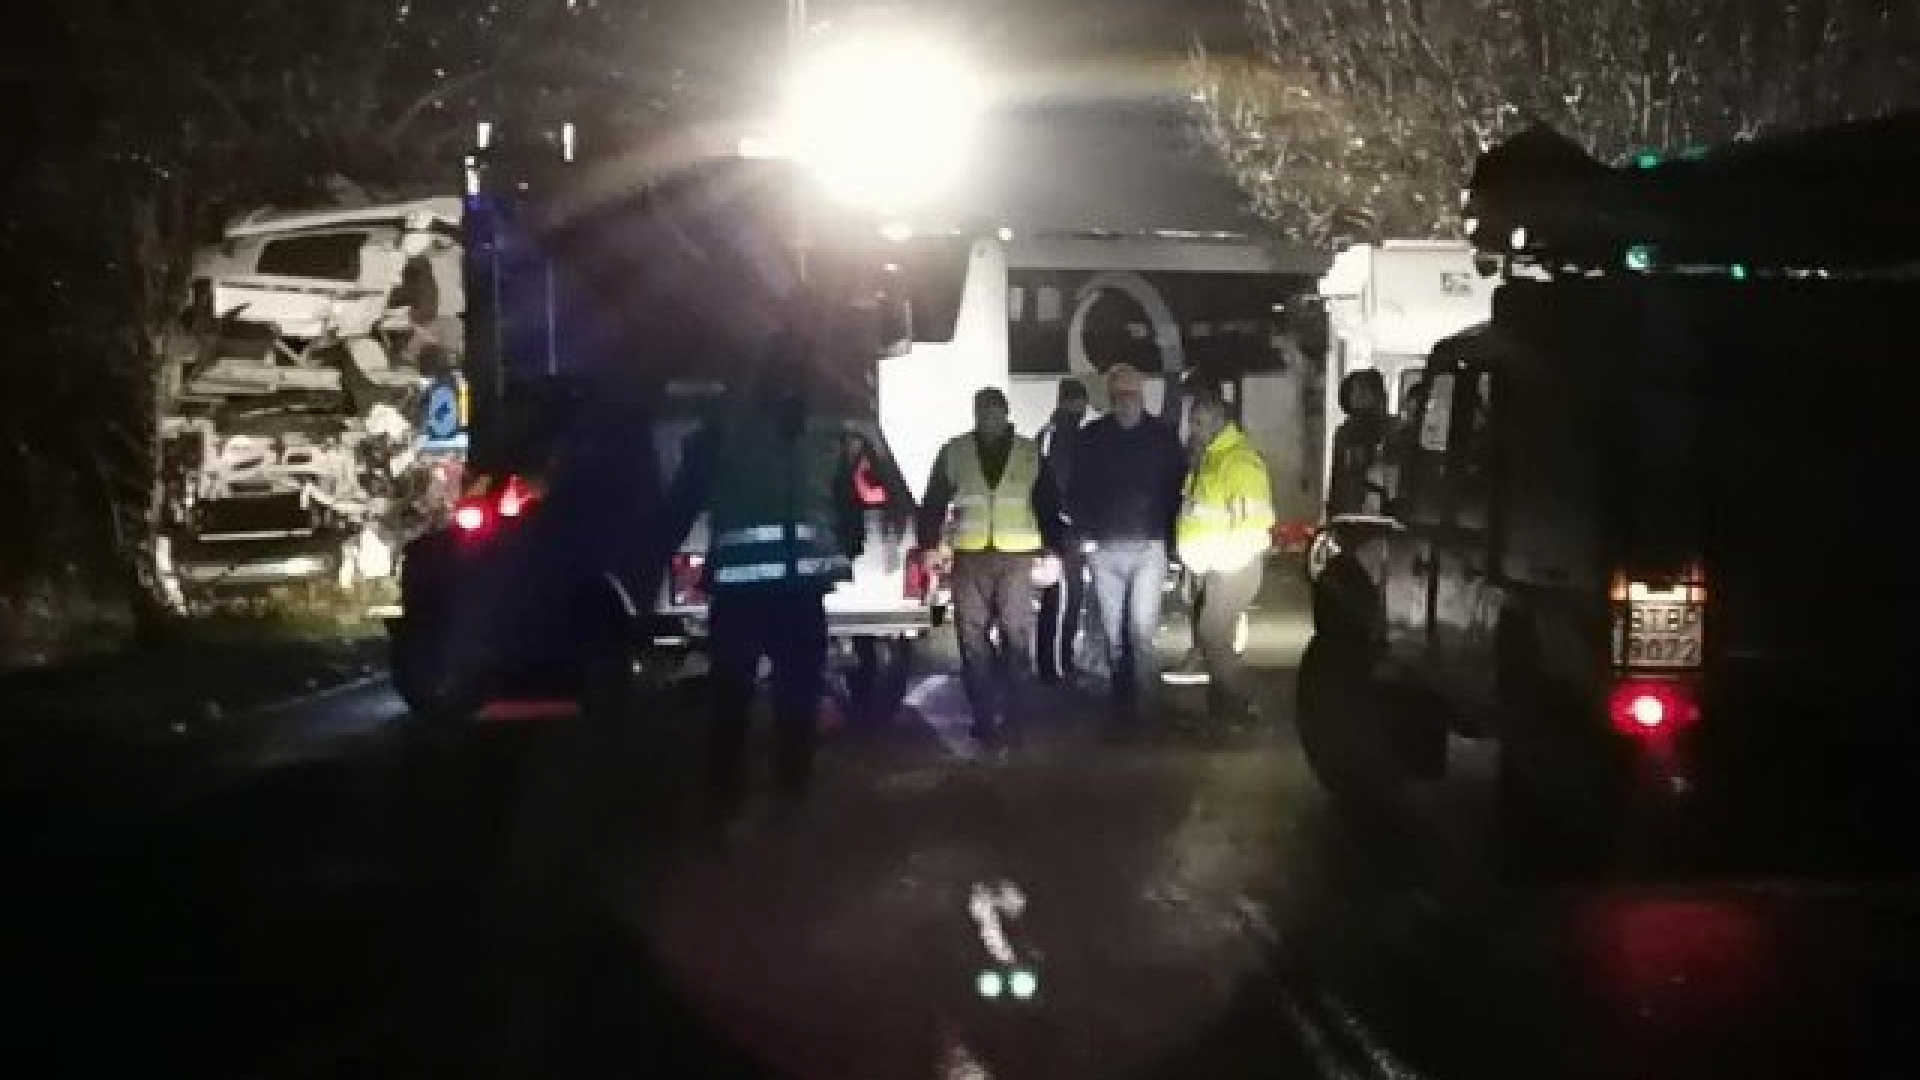 Шофьорът на автобуса ковчег ли е виновен за трагедията край Търново 